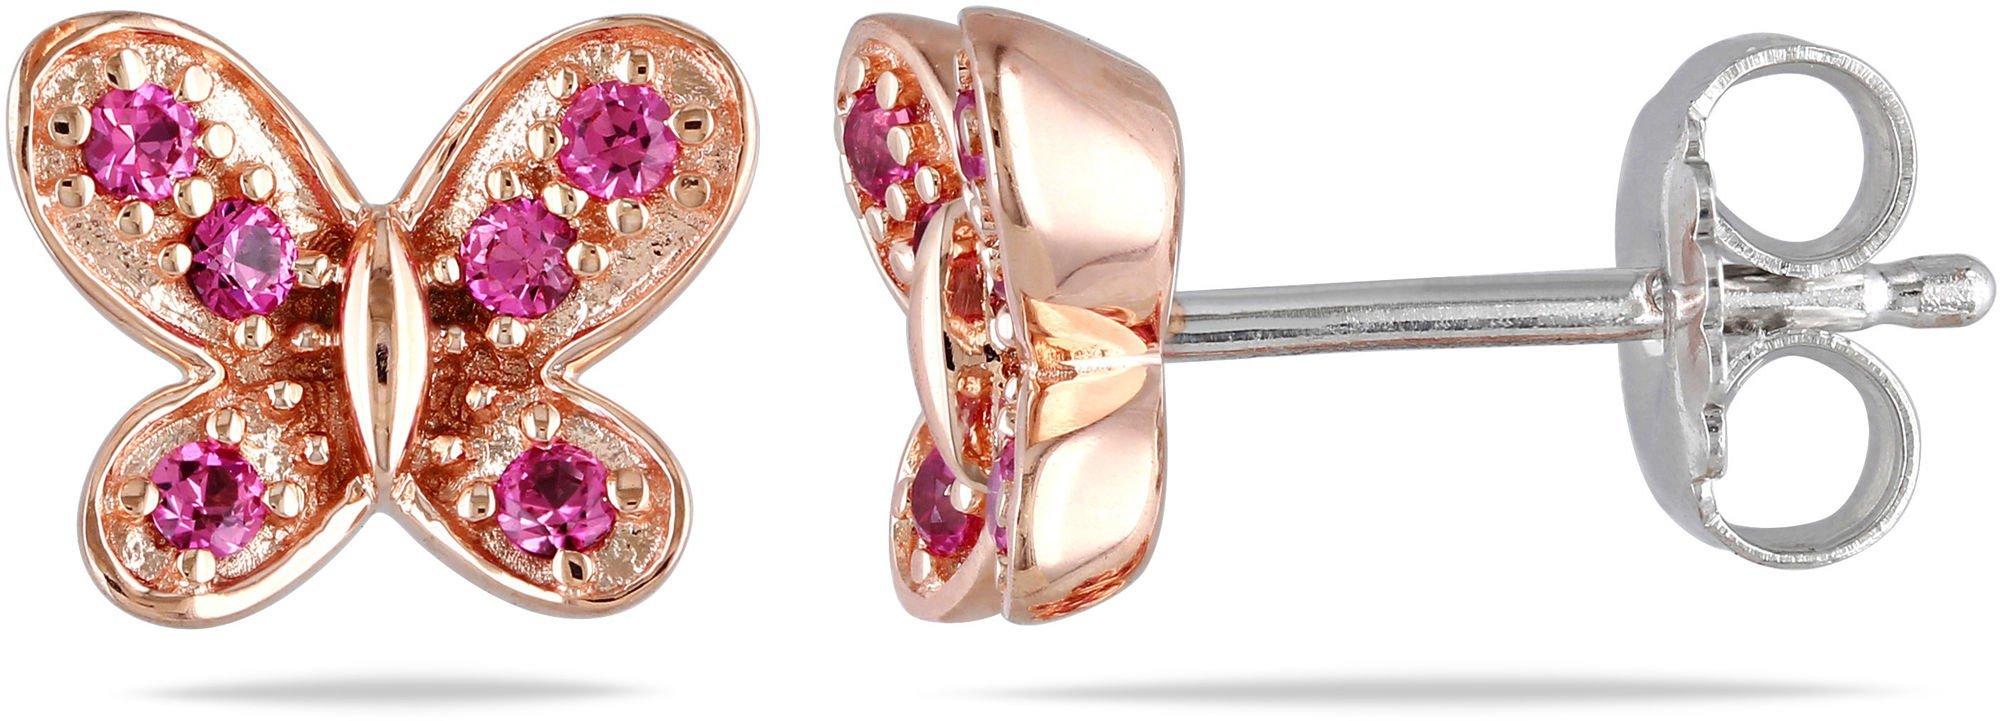 Pink Sapphire Butterfly Earrings